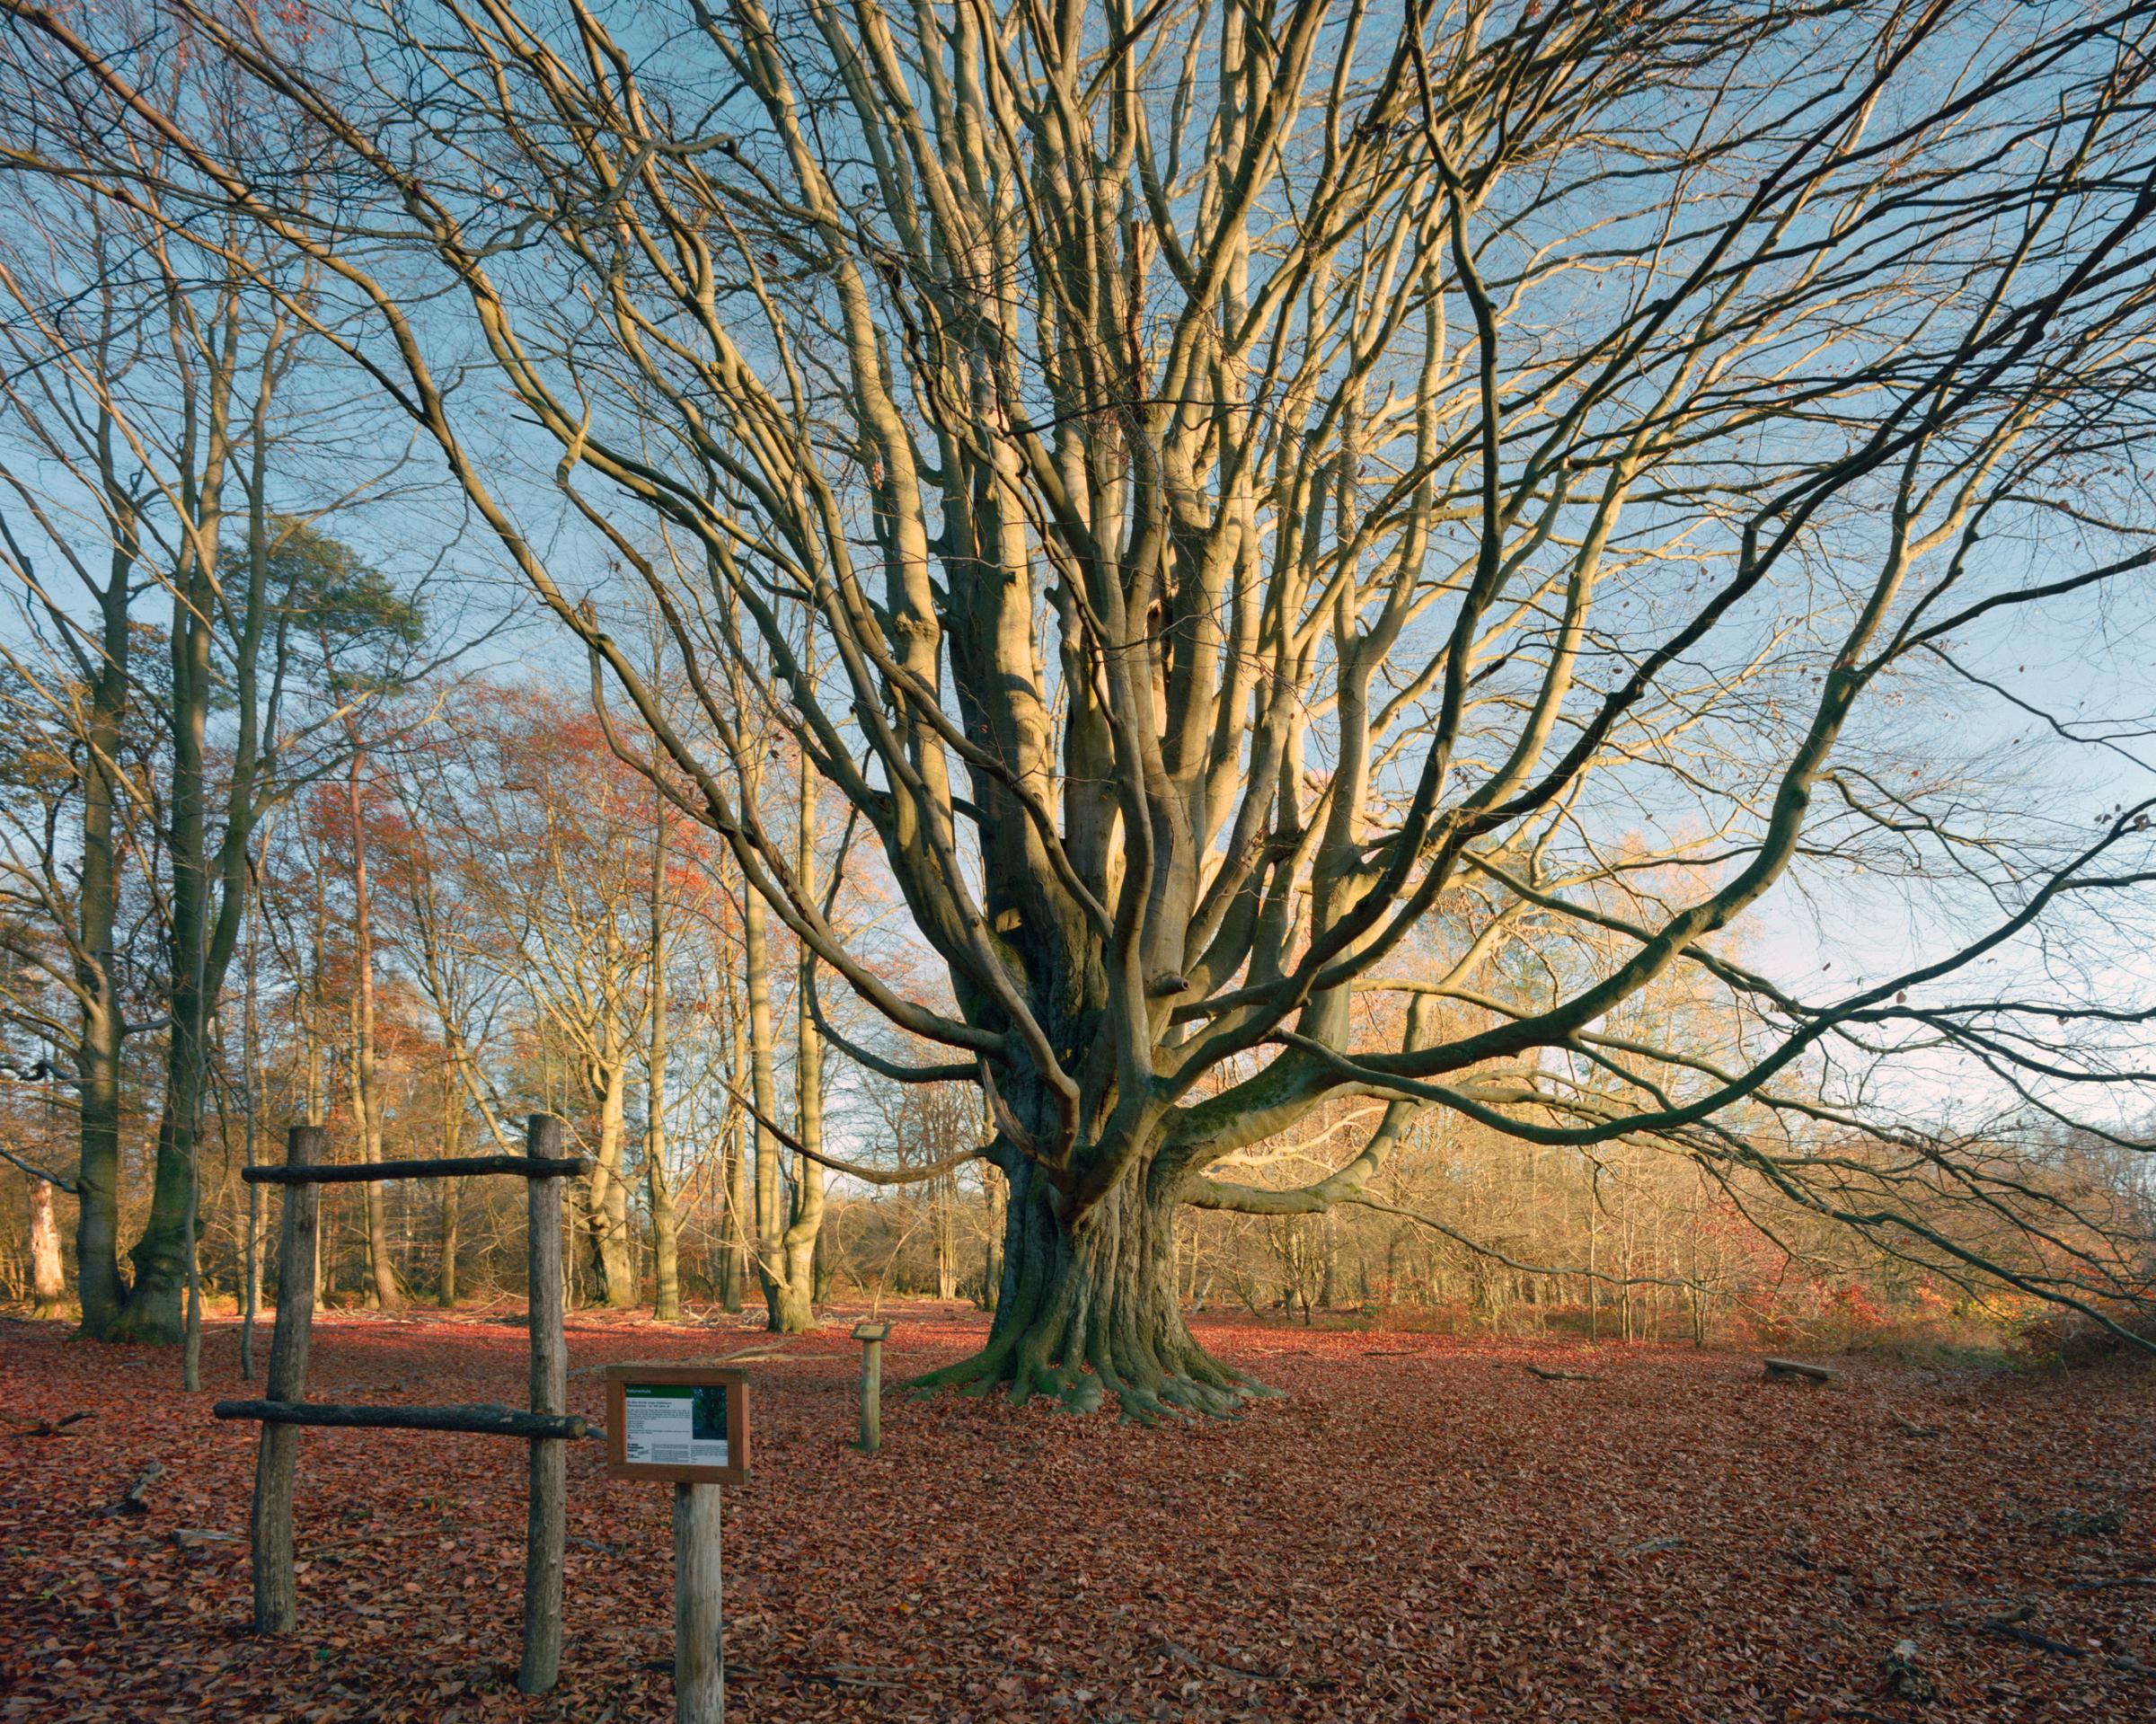 A beech tree near Angela Merkel's childhood home in Uckermark, Germany.